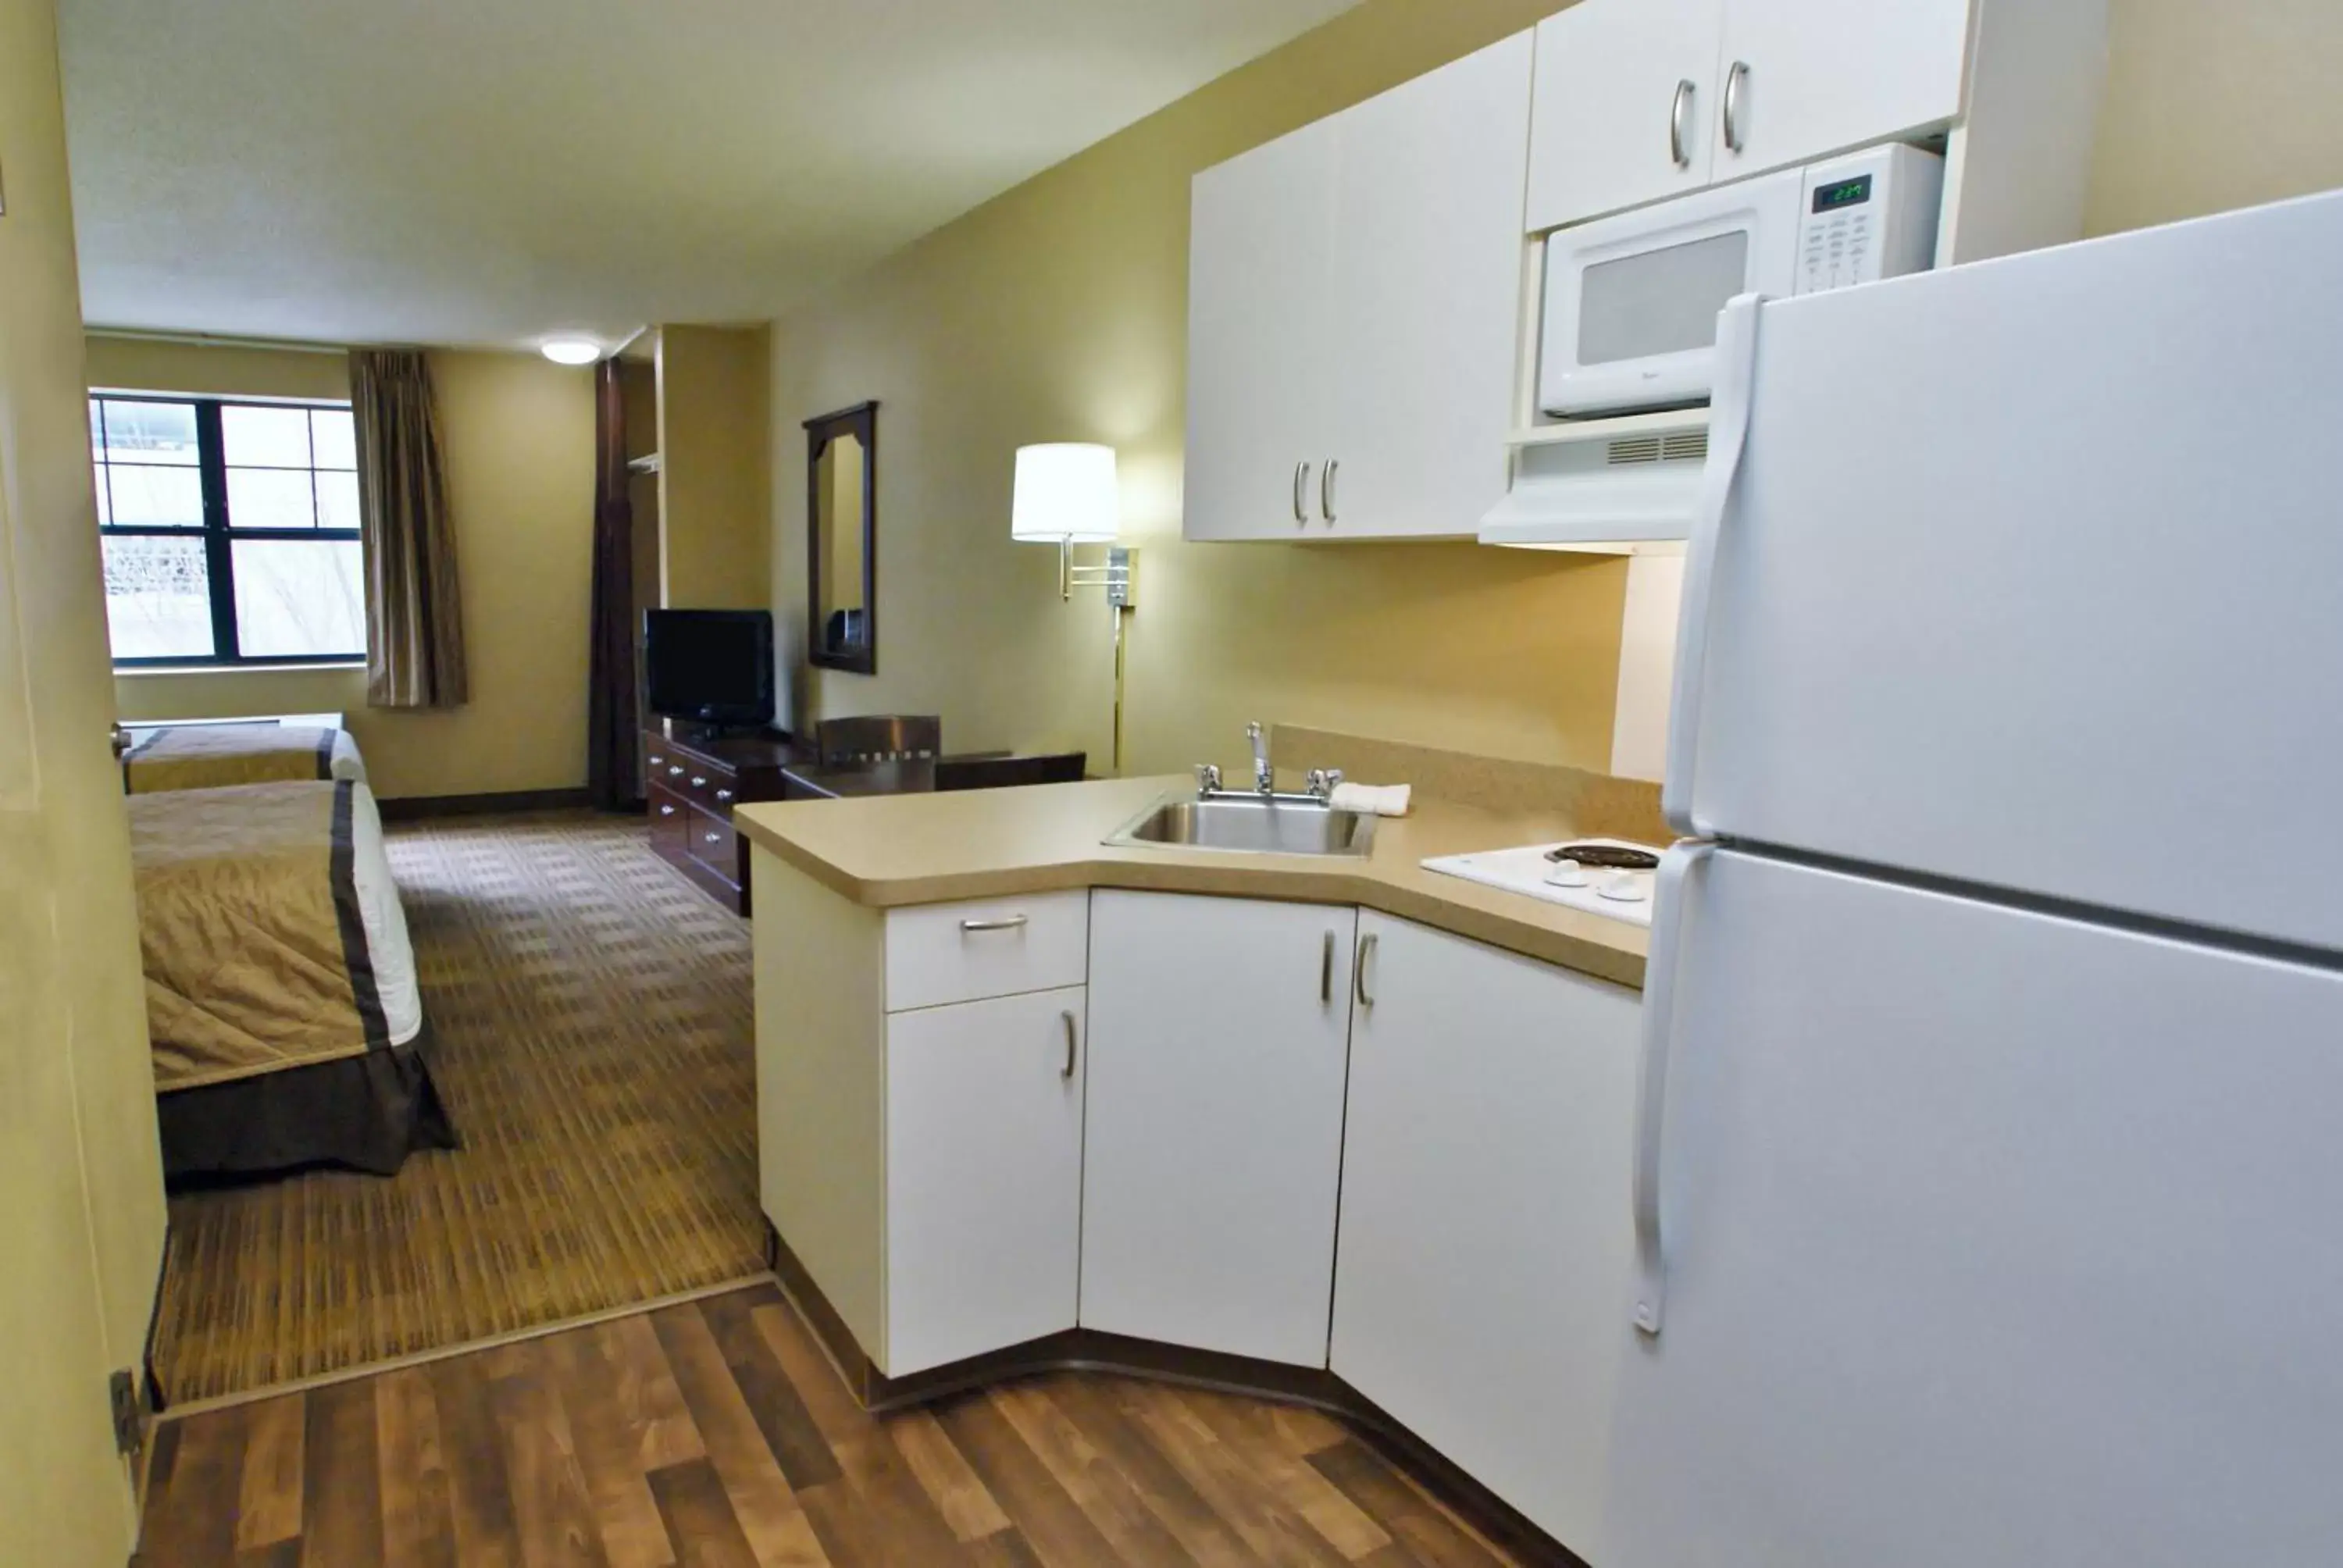 Kitchen or kitchenette, Kitchen/Kitchenette in Extended Stay America Suites - Atlanta - Perimeter - Crestline